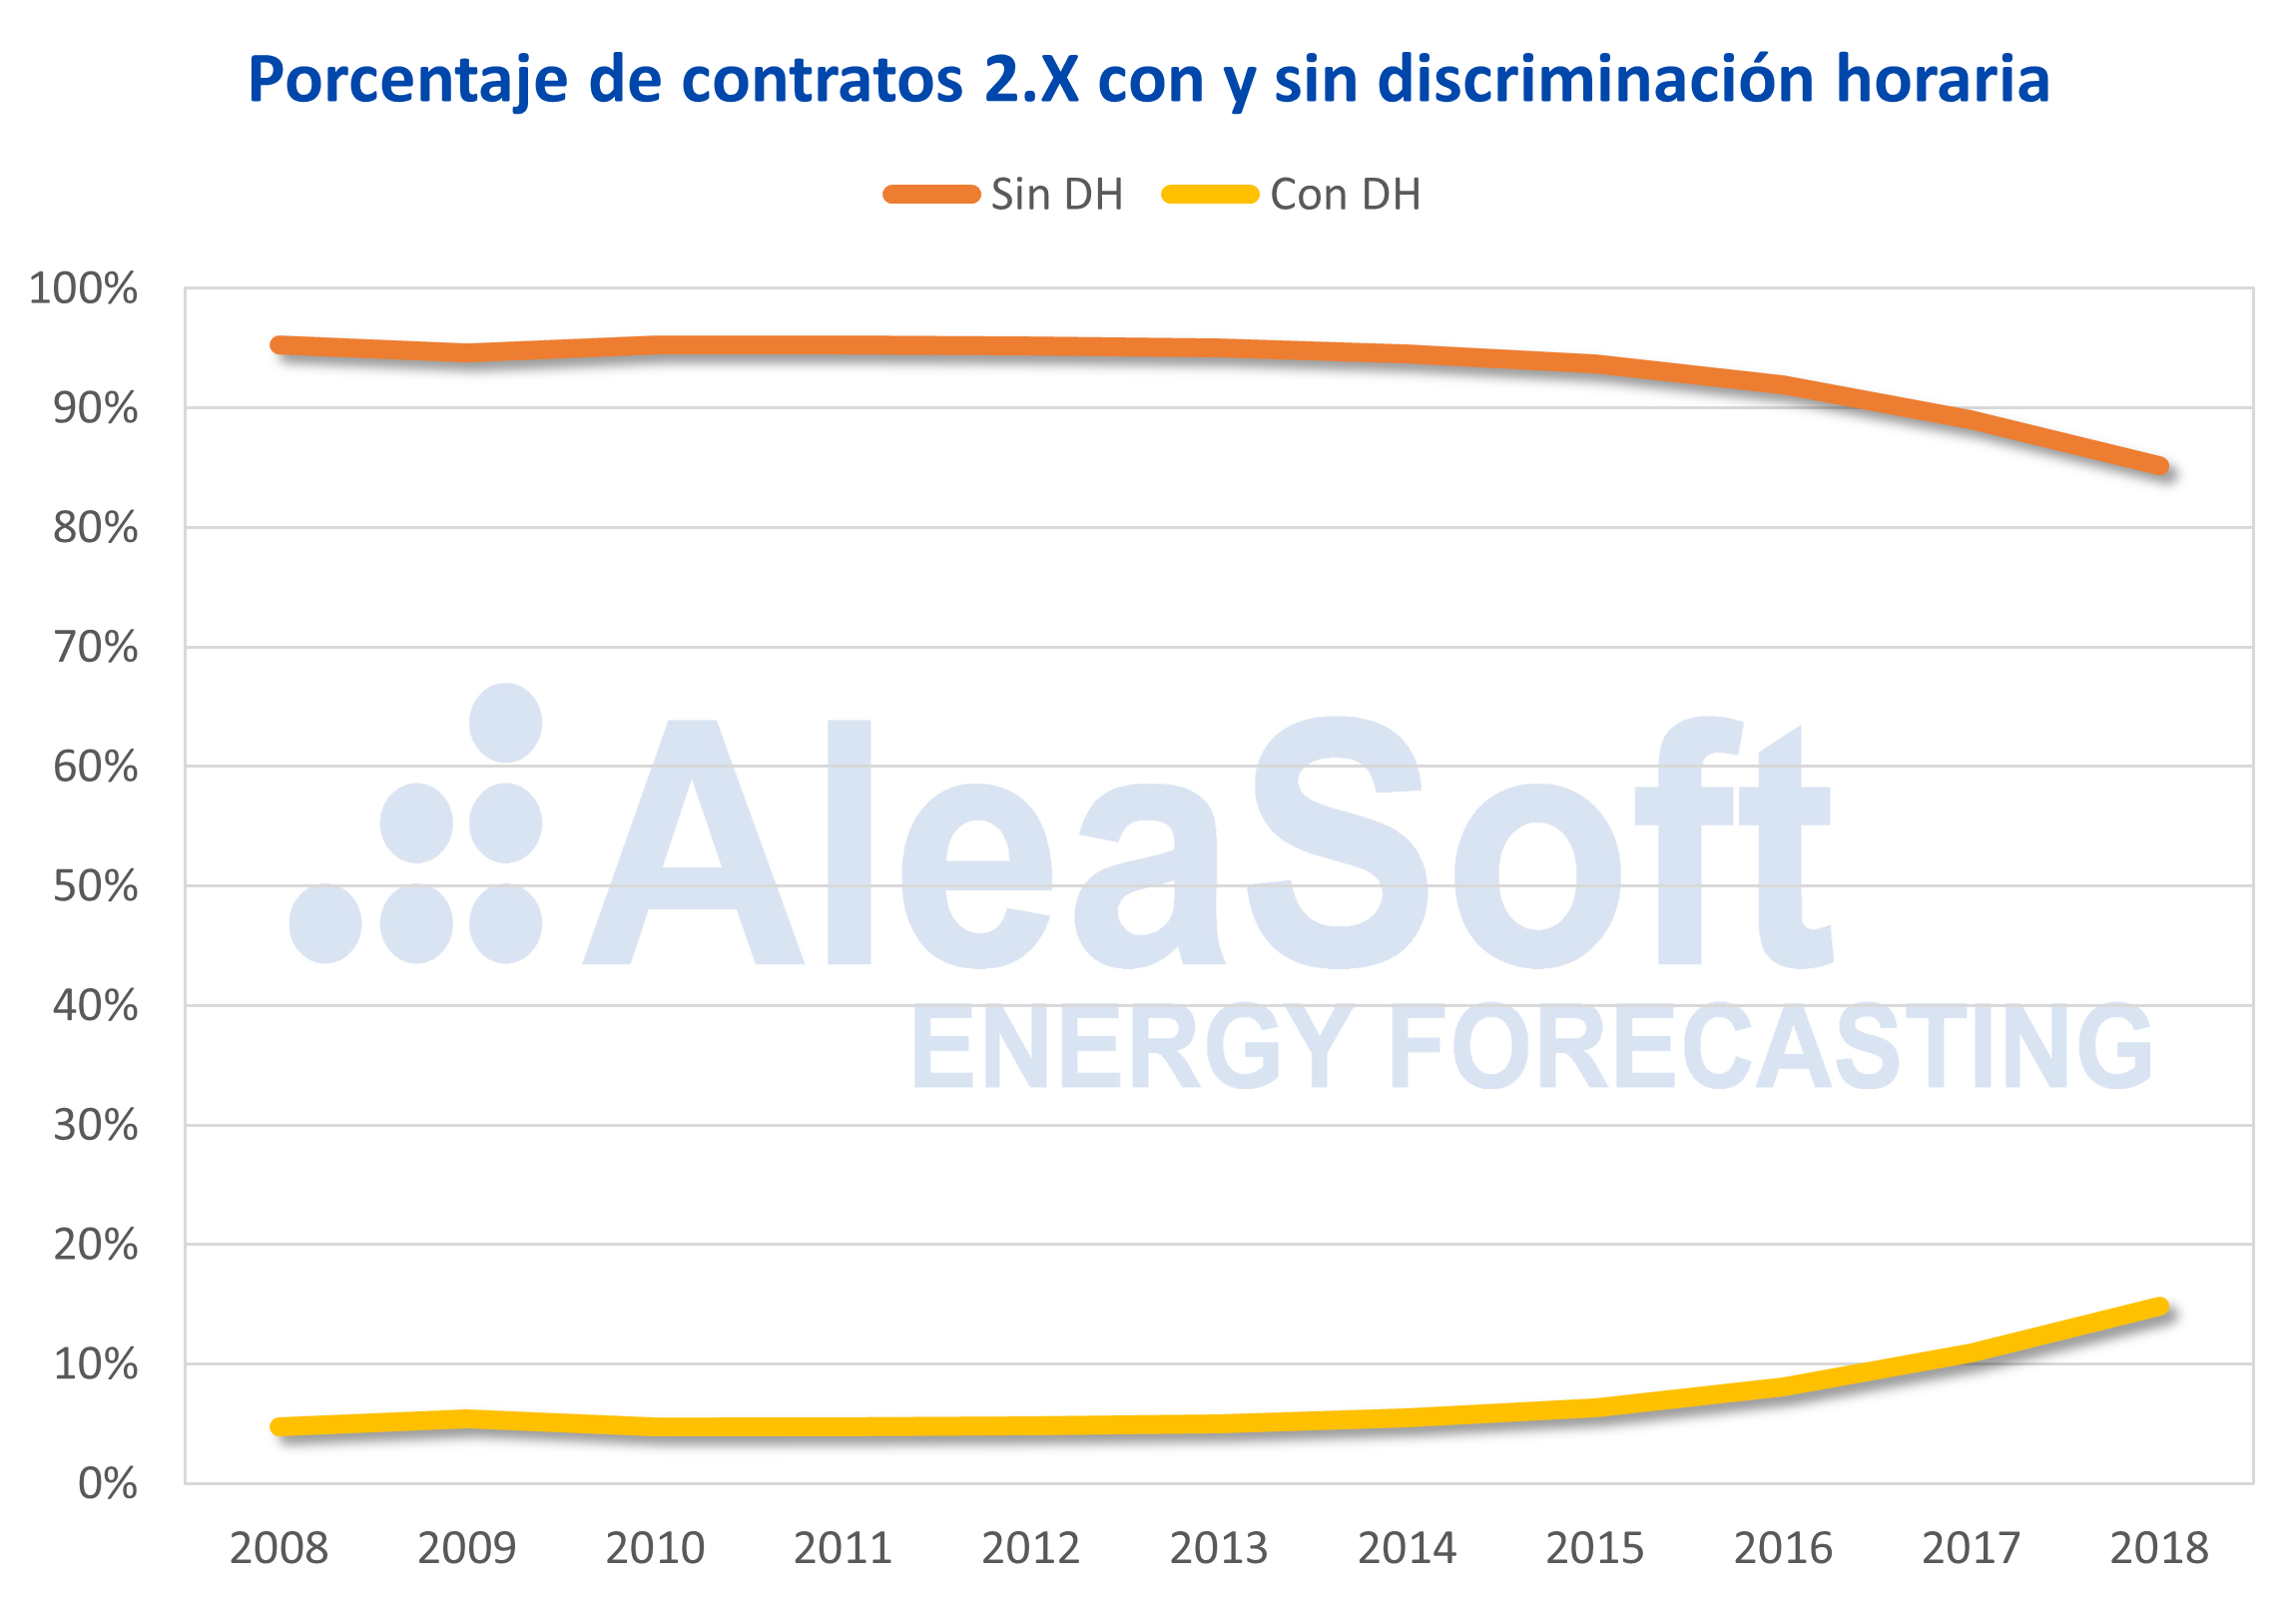 AleaSoft - Contratos electricidad discriminación horaria